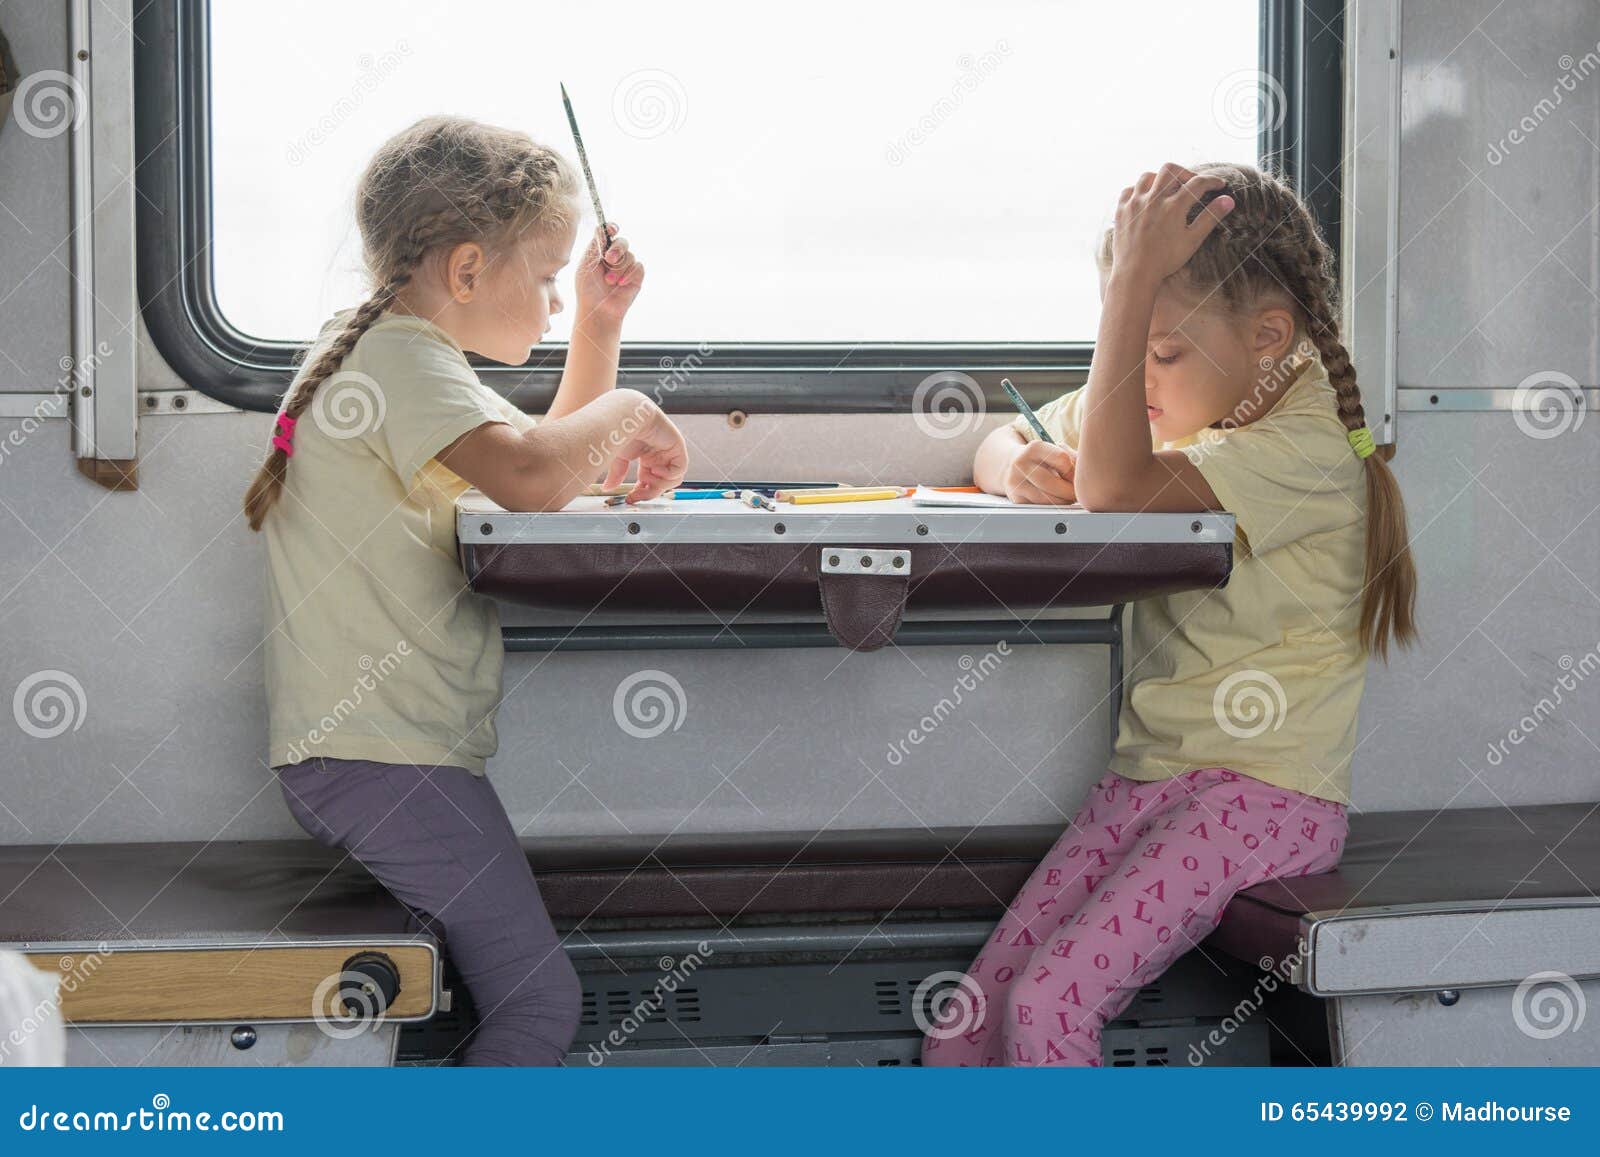 Ребенок едет на поезде с бабушкой. Девочки в поезде. Поезда для детей. Вагон для детей. Две девочки в поезде.